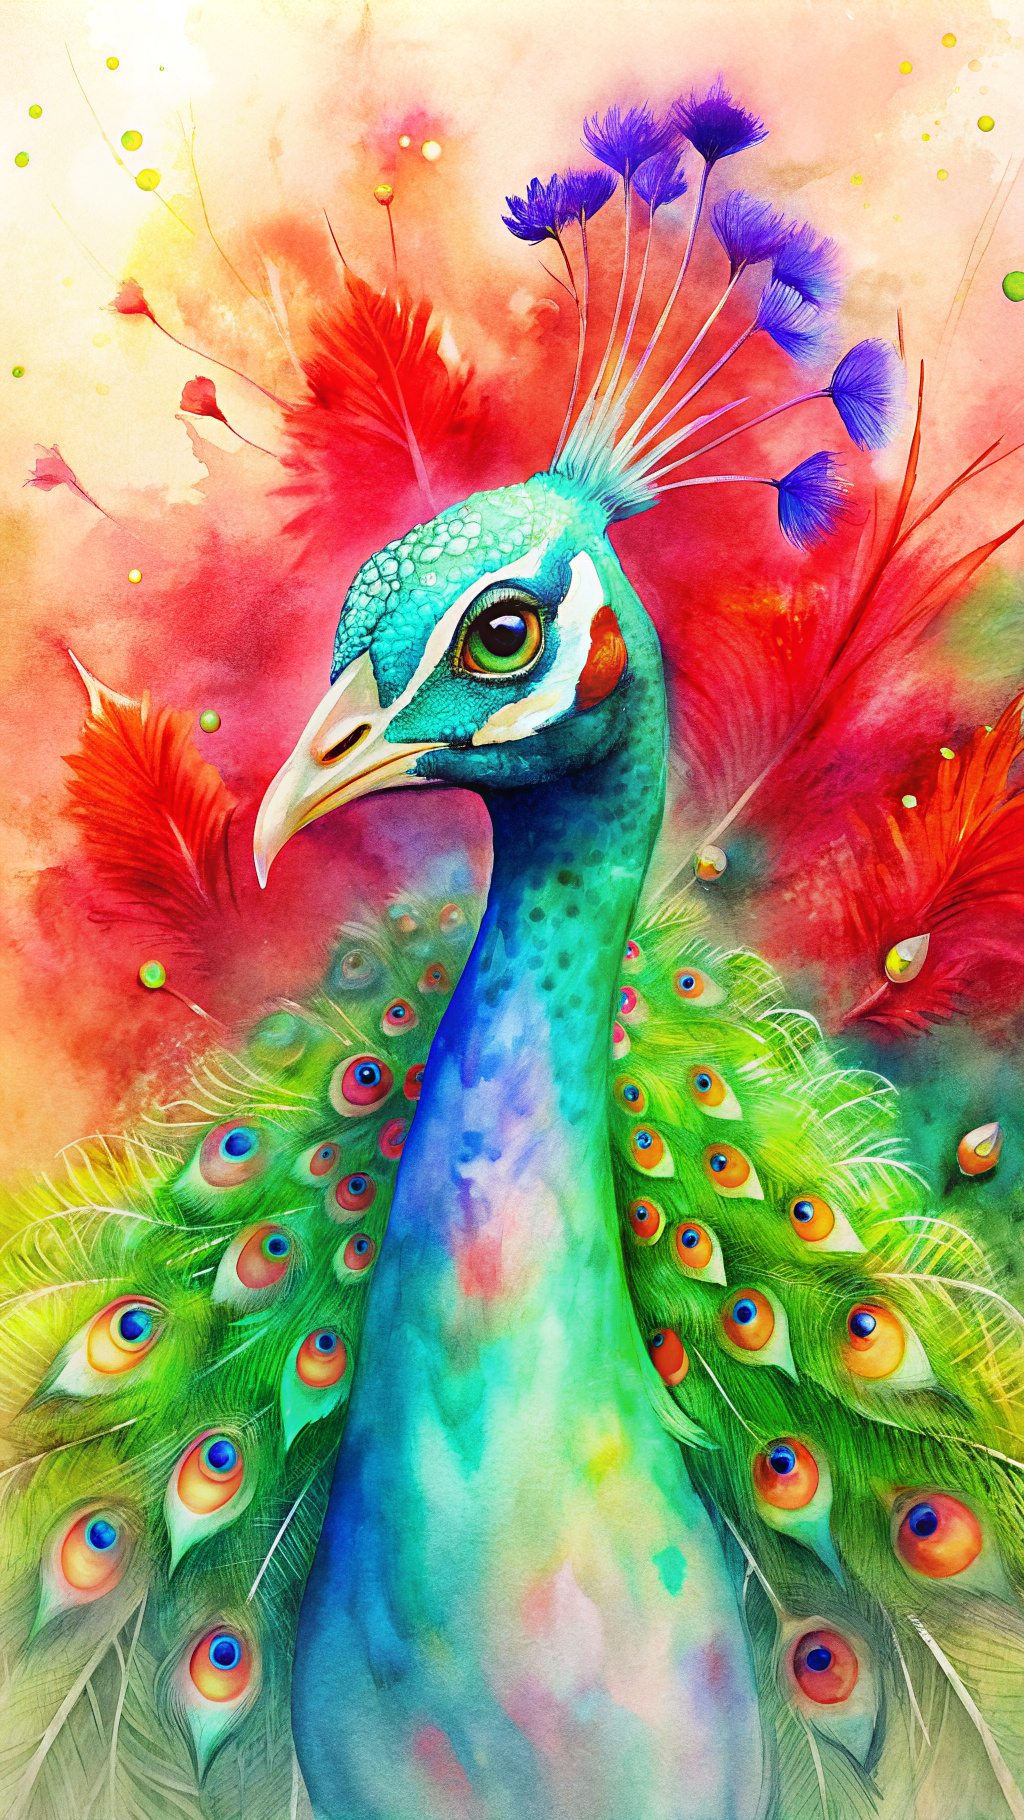 Crie uma ilustração de um pavão, com sua plumagem aberta, 1000olhos, com elementos da natureza de fundo. Em cores CMYK